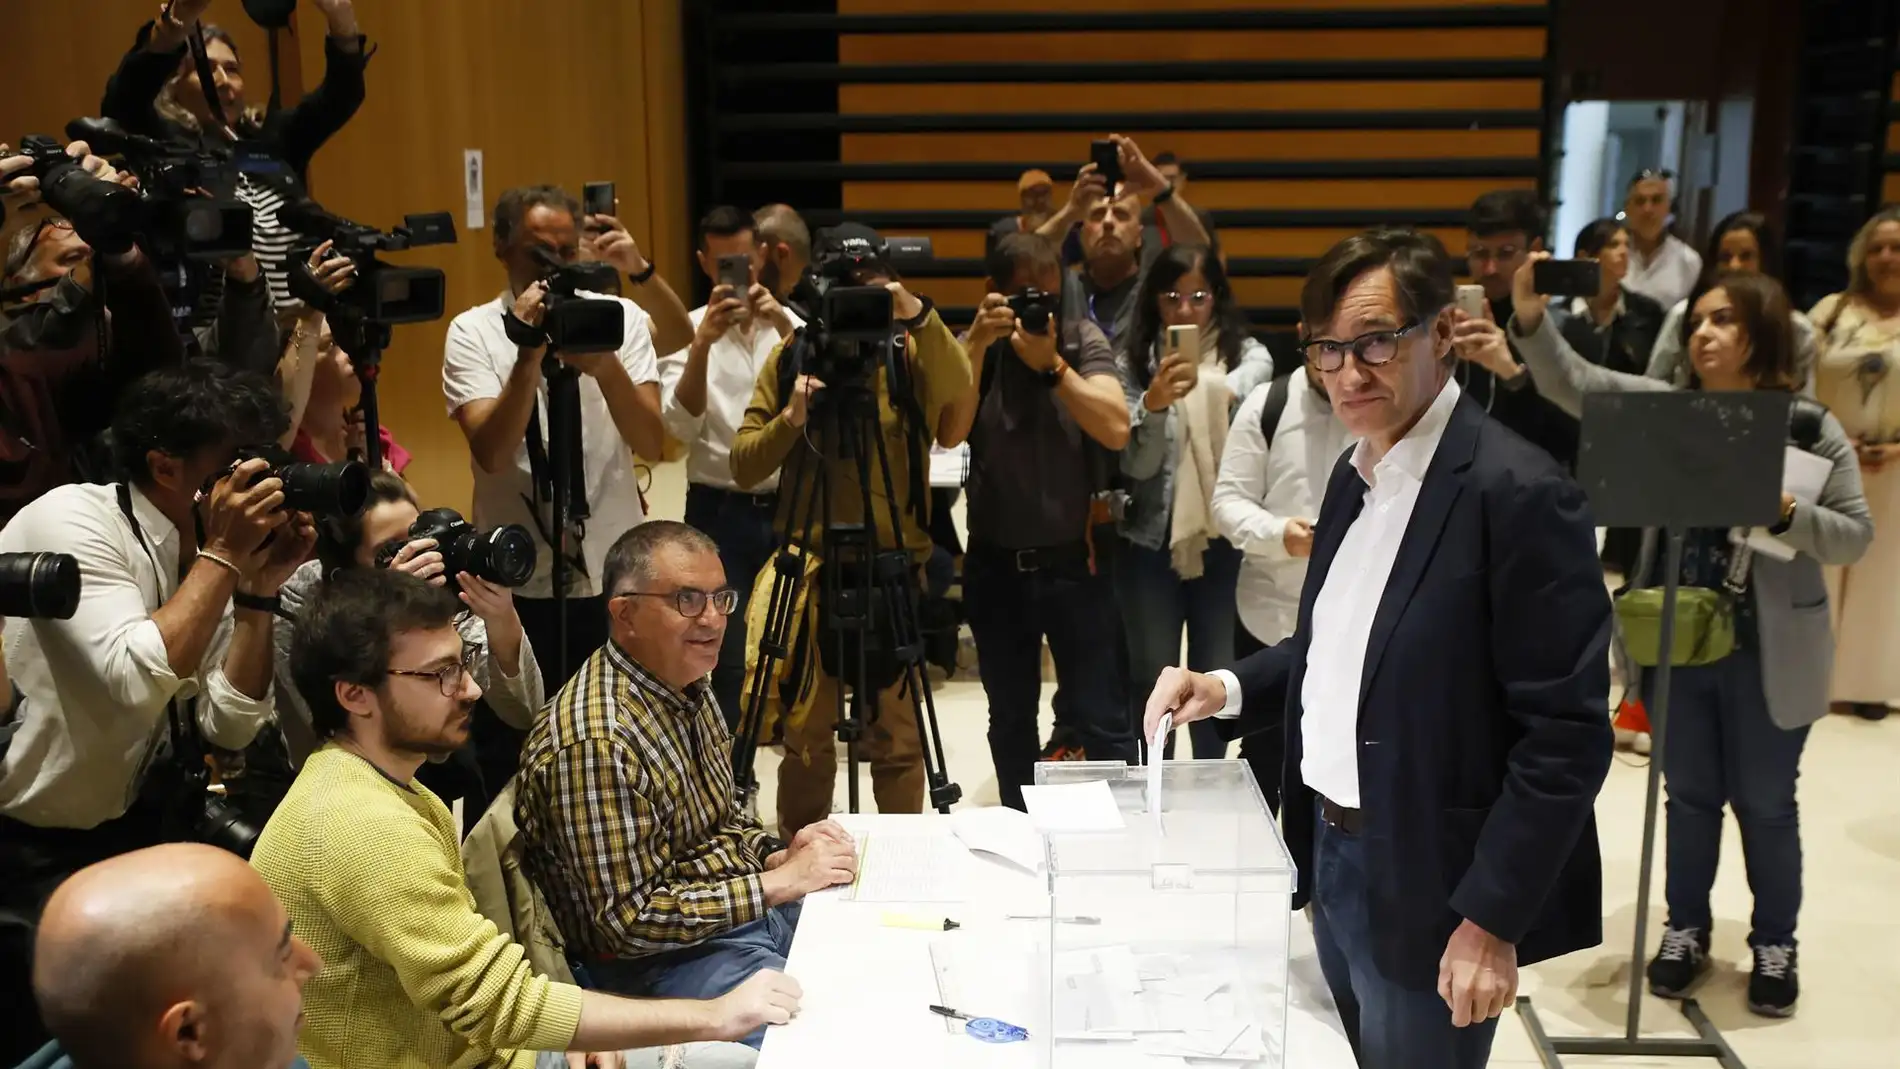 El candidato del PSC a las elecciones catalanas, Salvador Illa, vota en La Roca del Vallès (Barcelona), su ciudad natal.